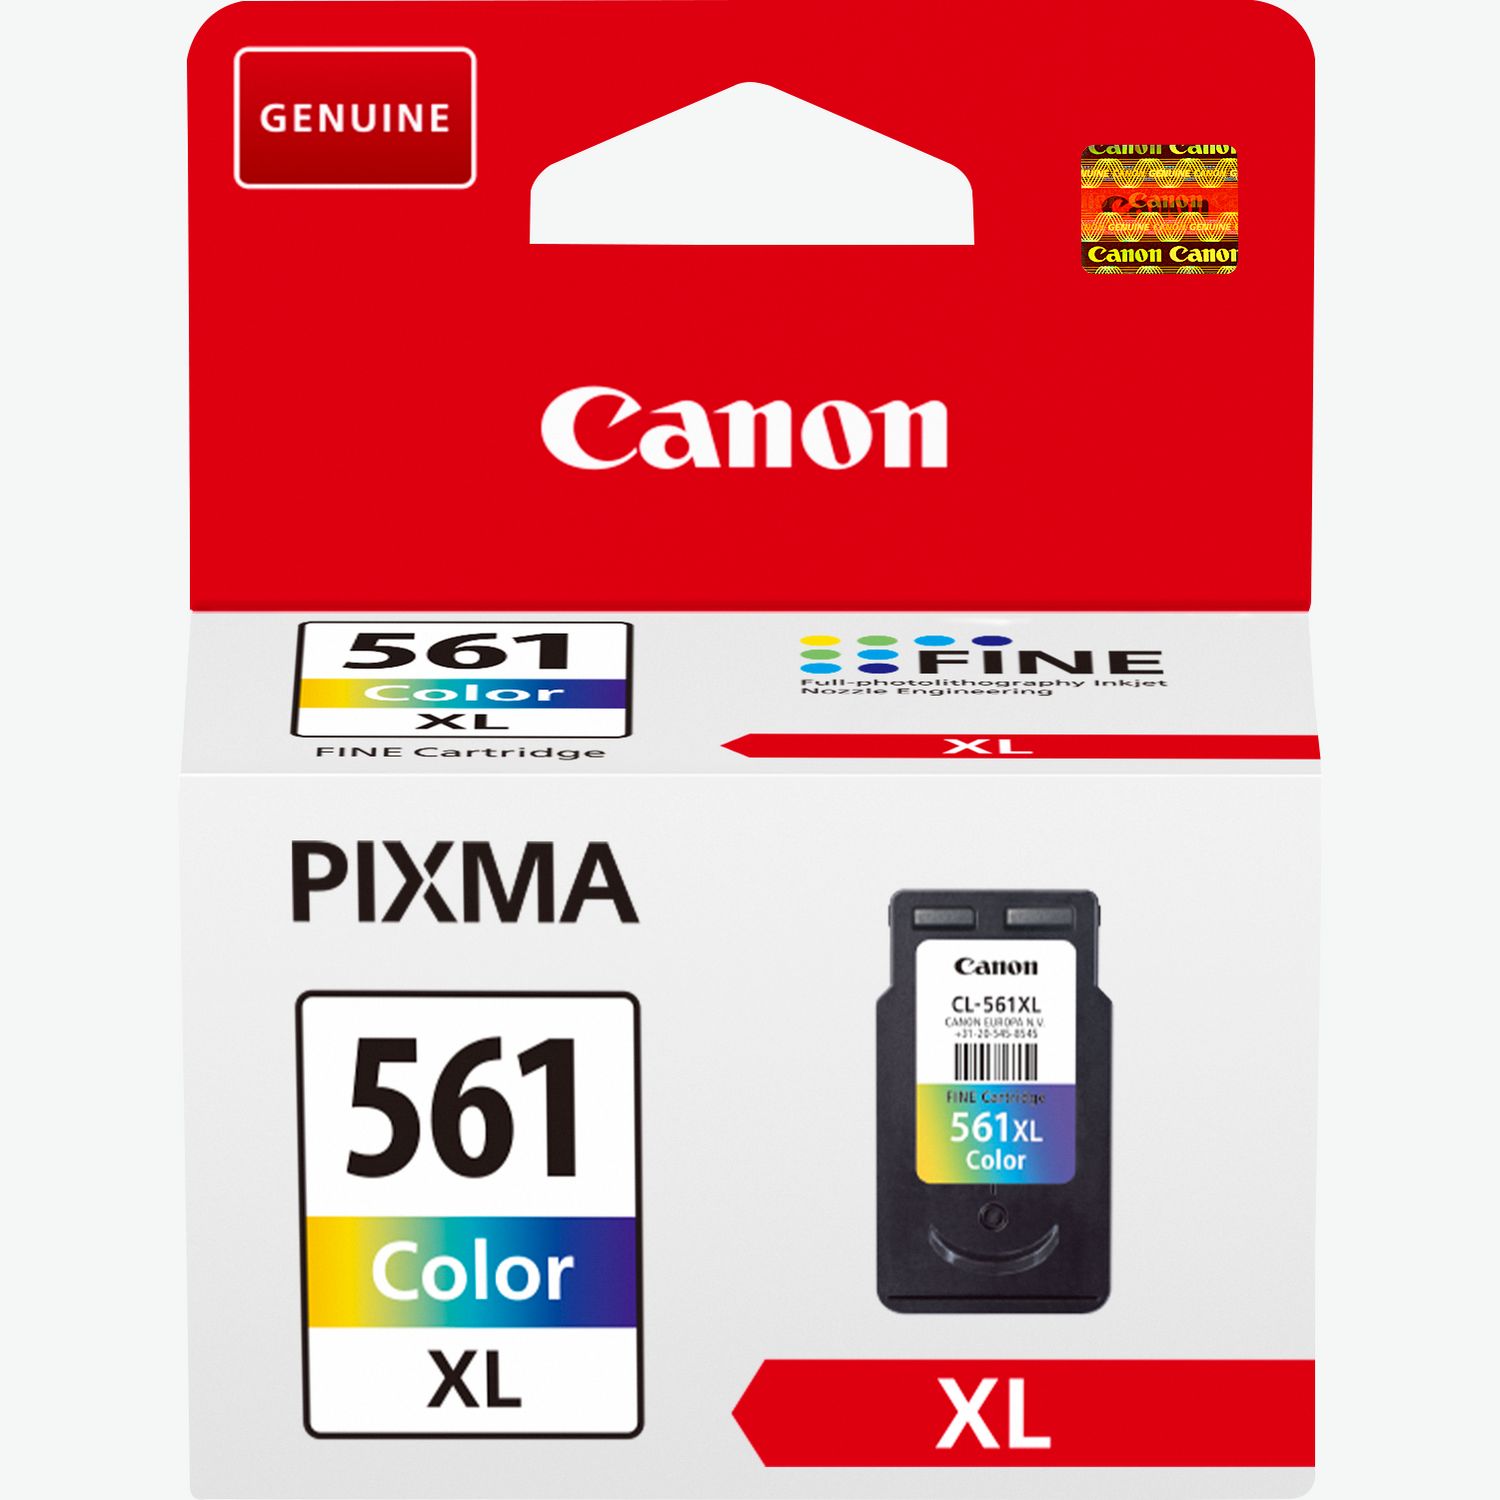 Impresora Multifunción Canon Pixma TS5352 Rosa